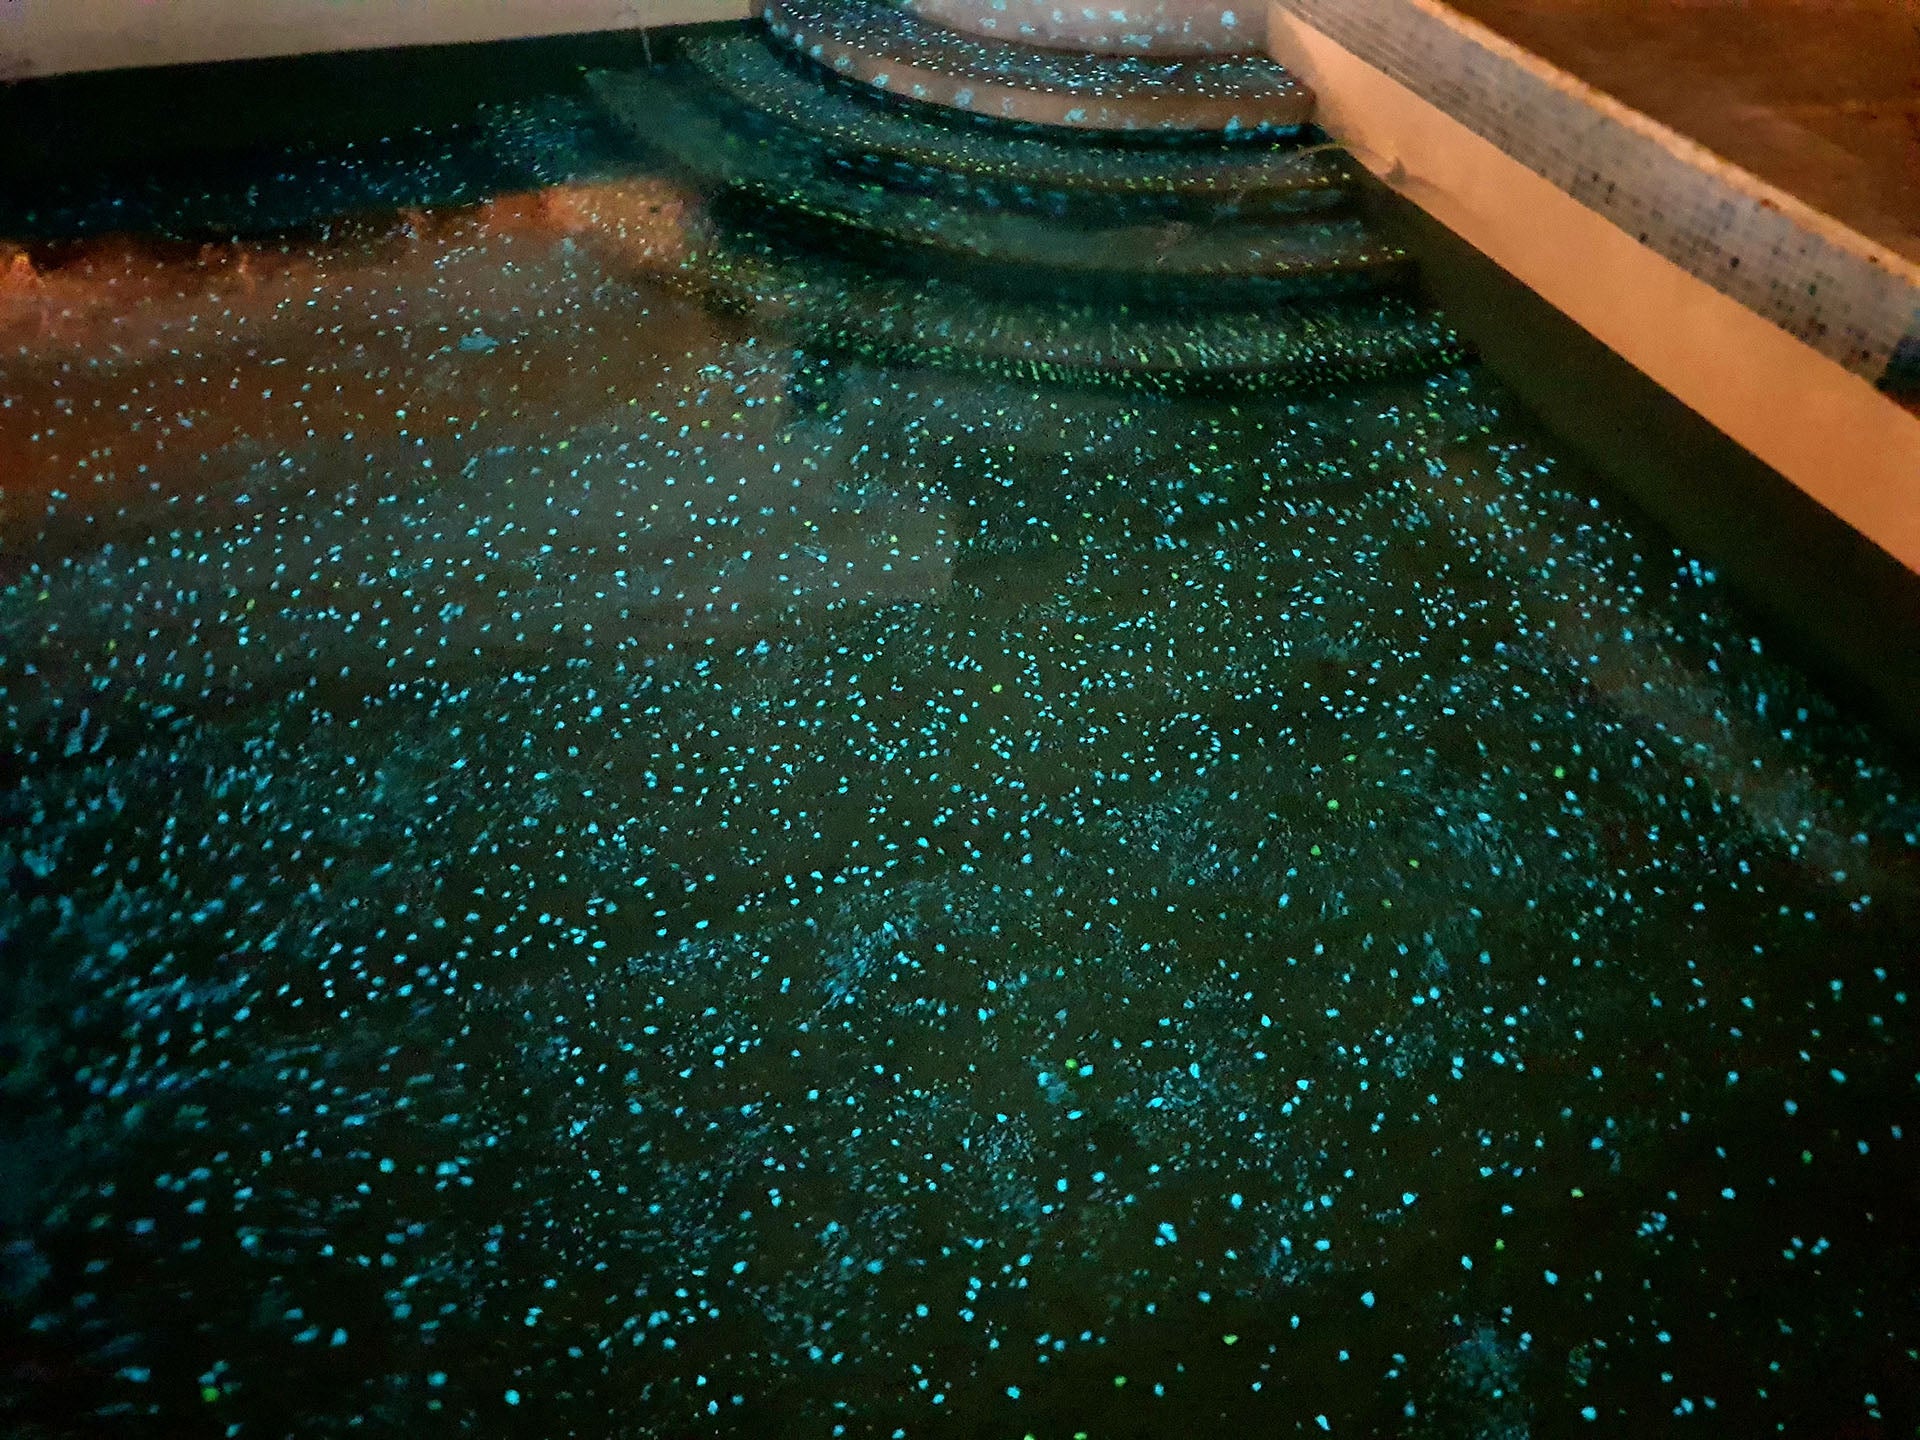 Glowing pool at night